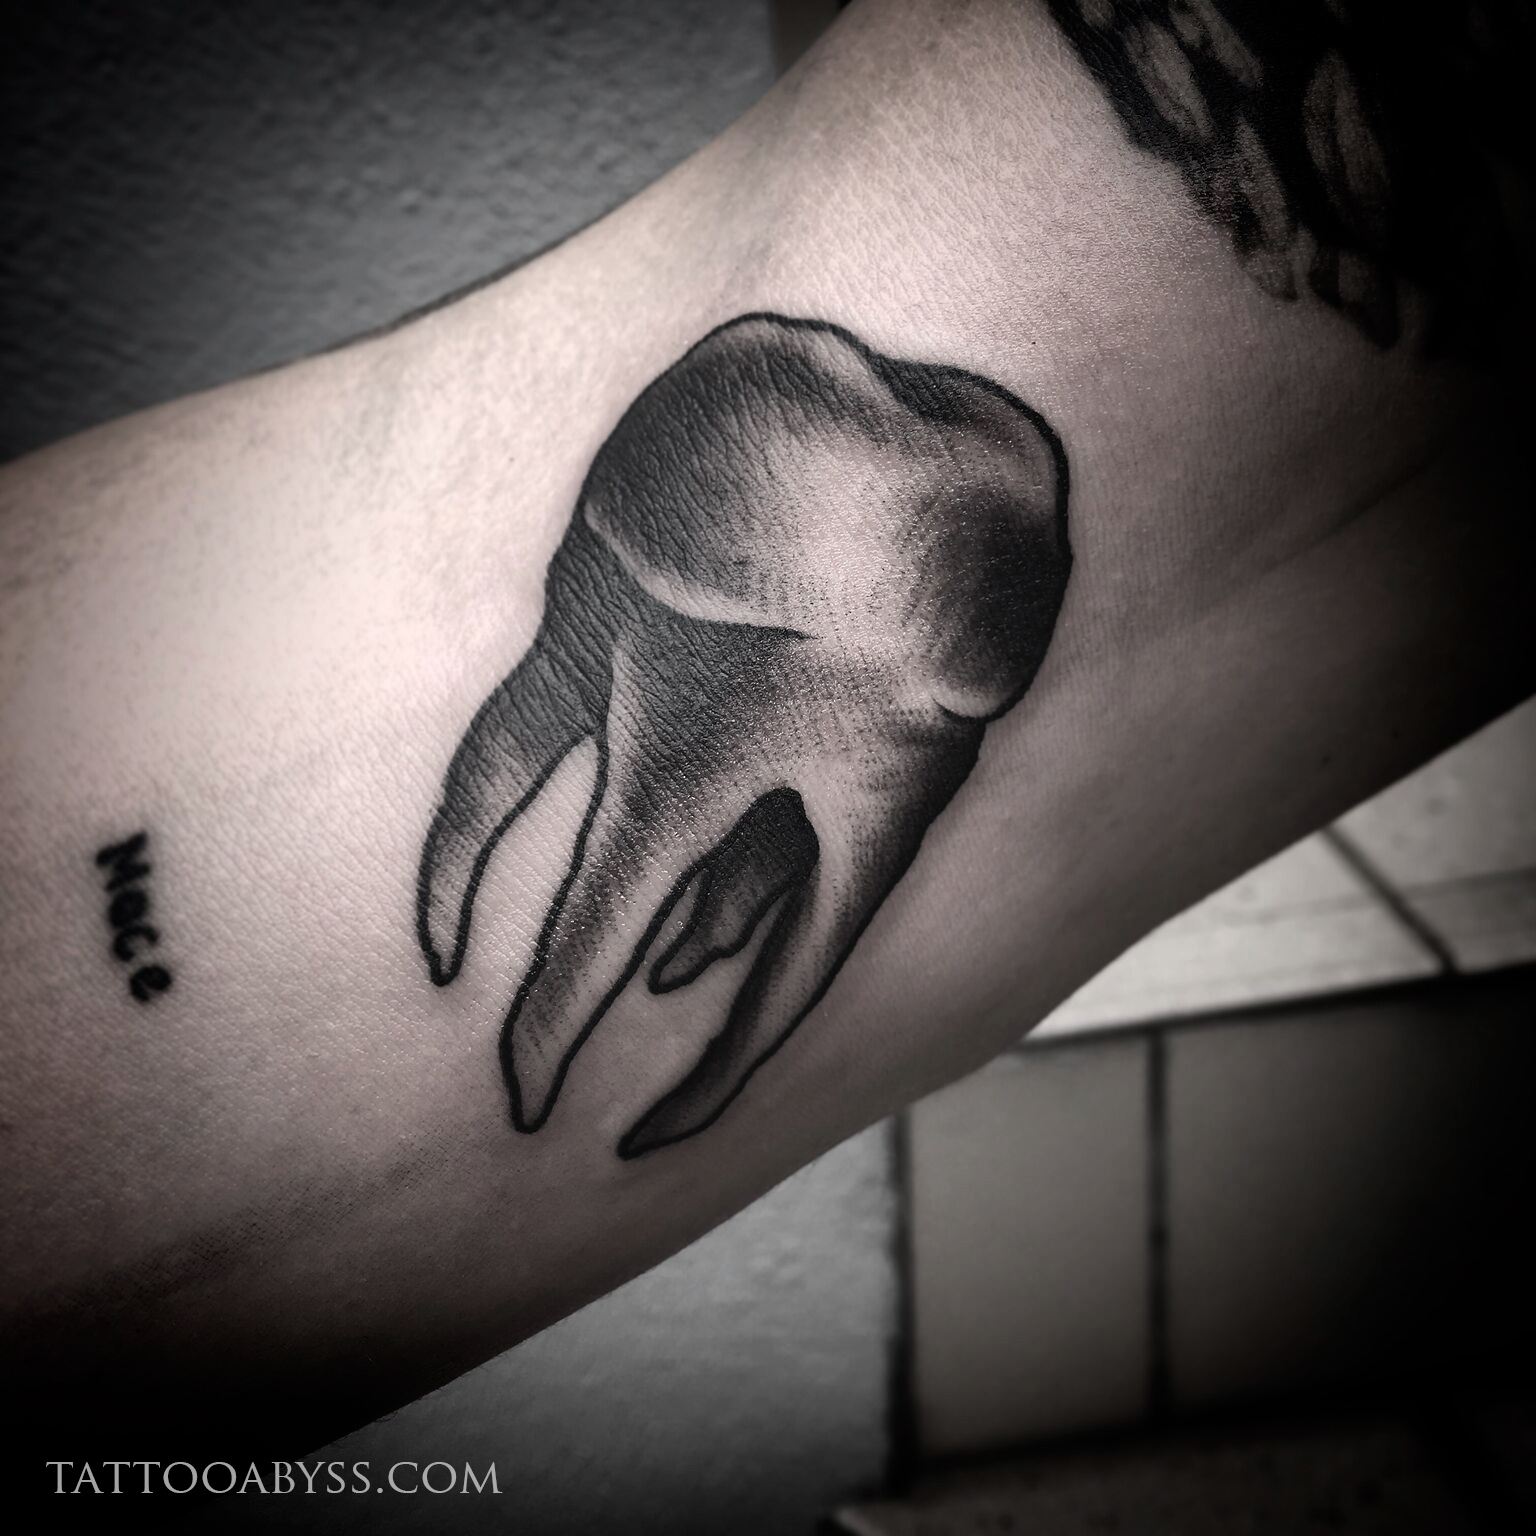 tooth-tattoo-adz-tattoo-abyss